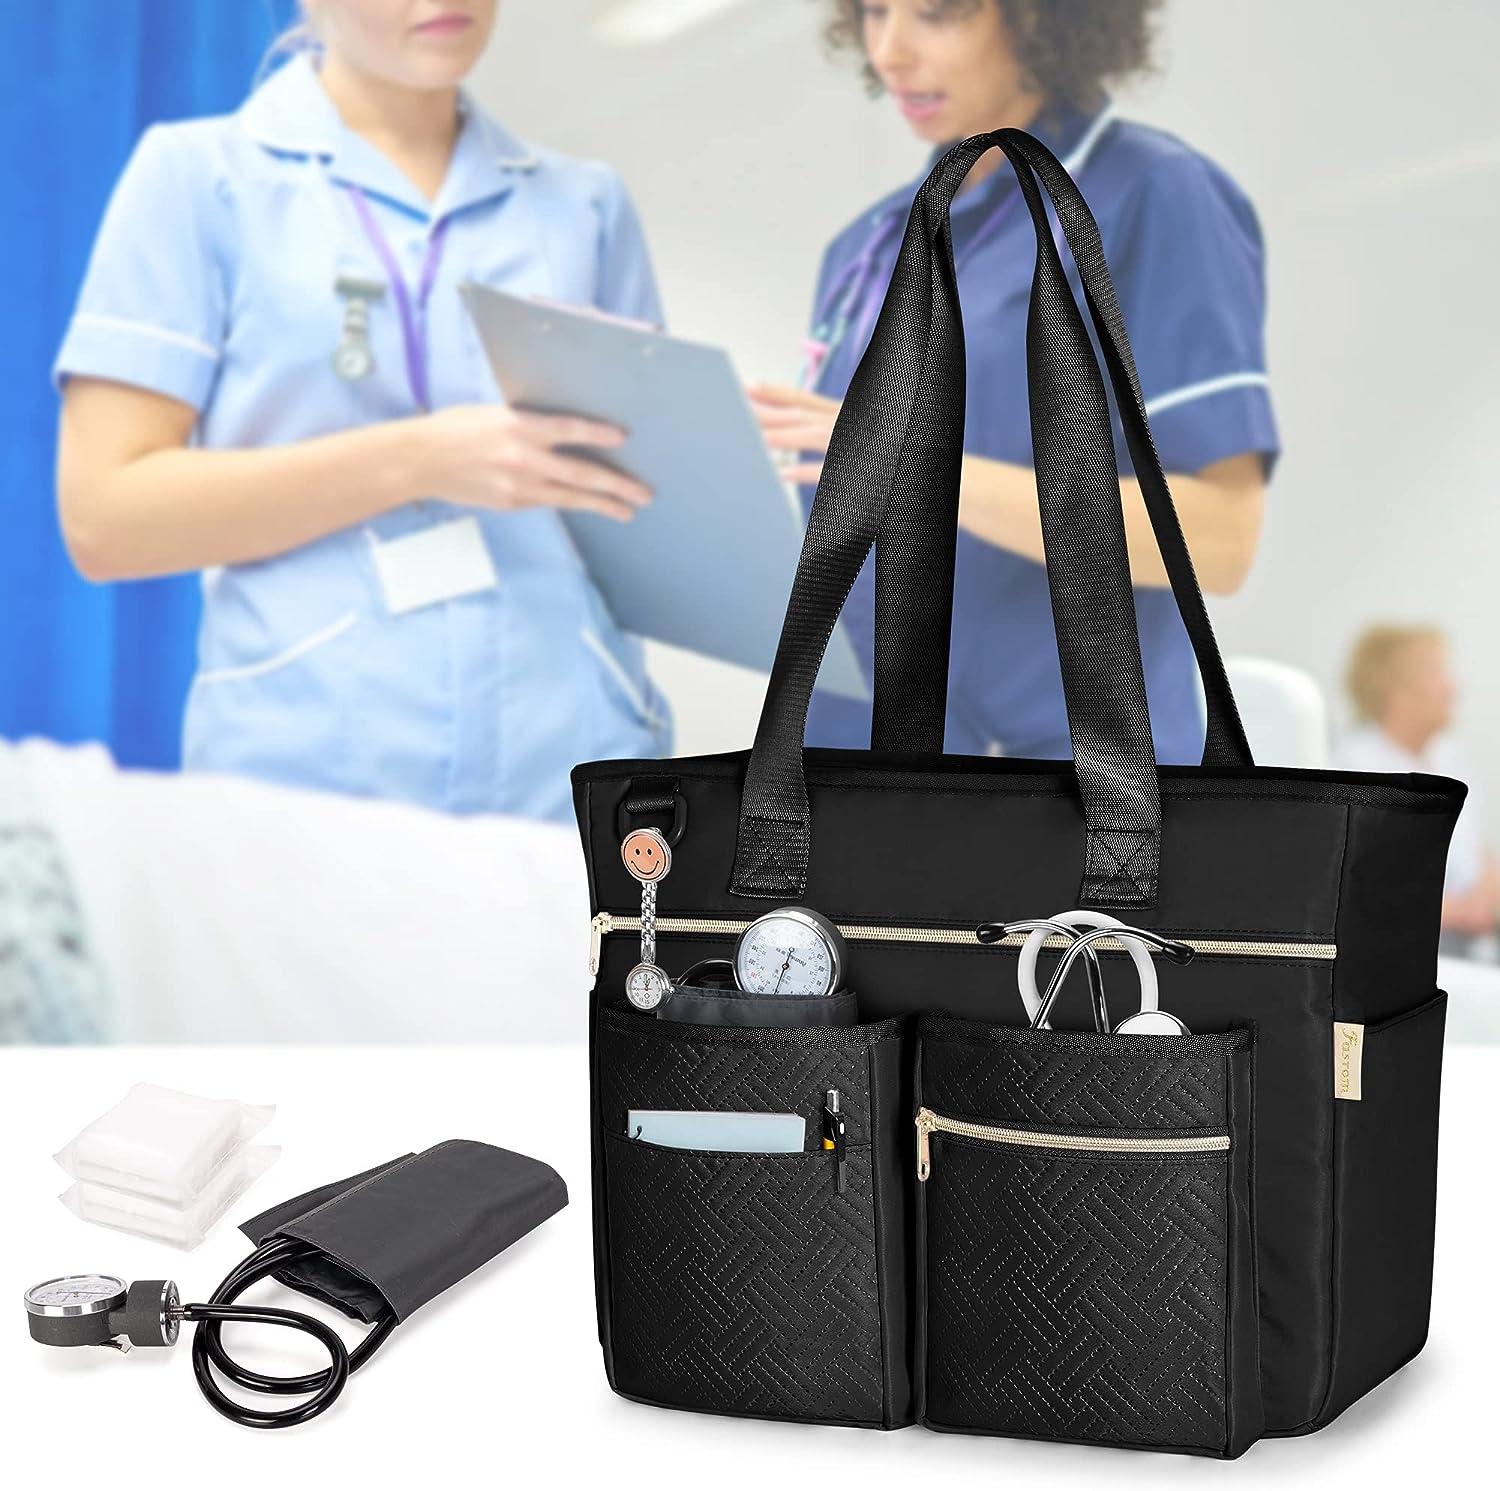 Nursing Clinical Bag